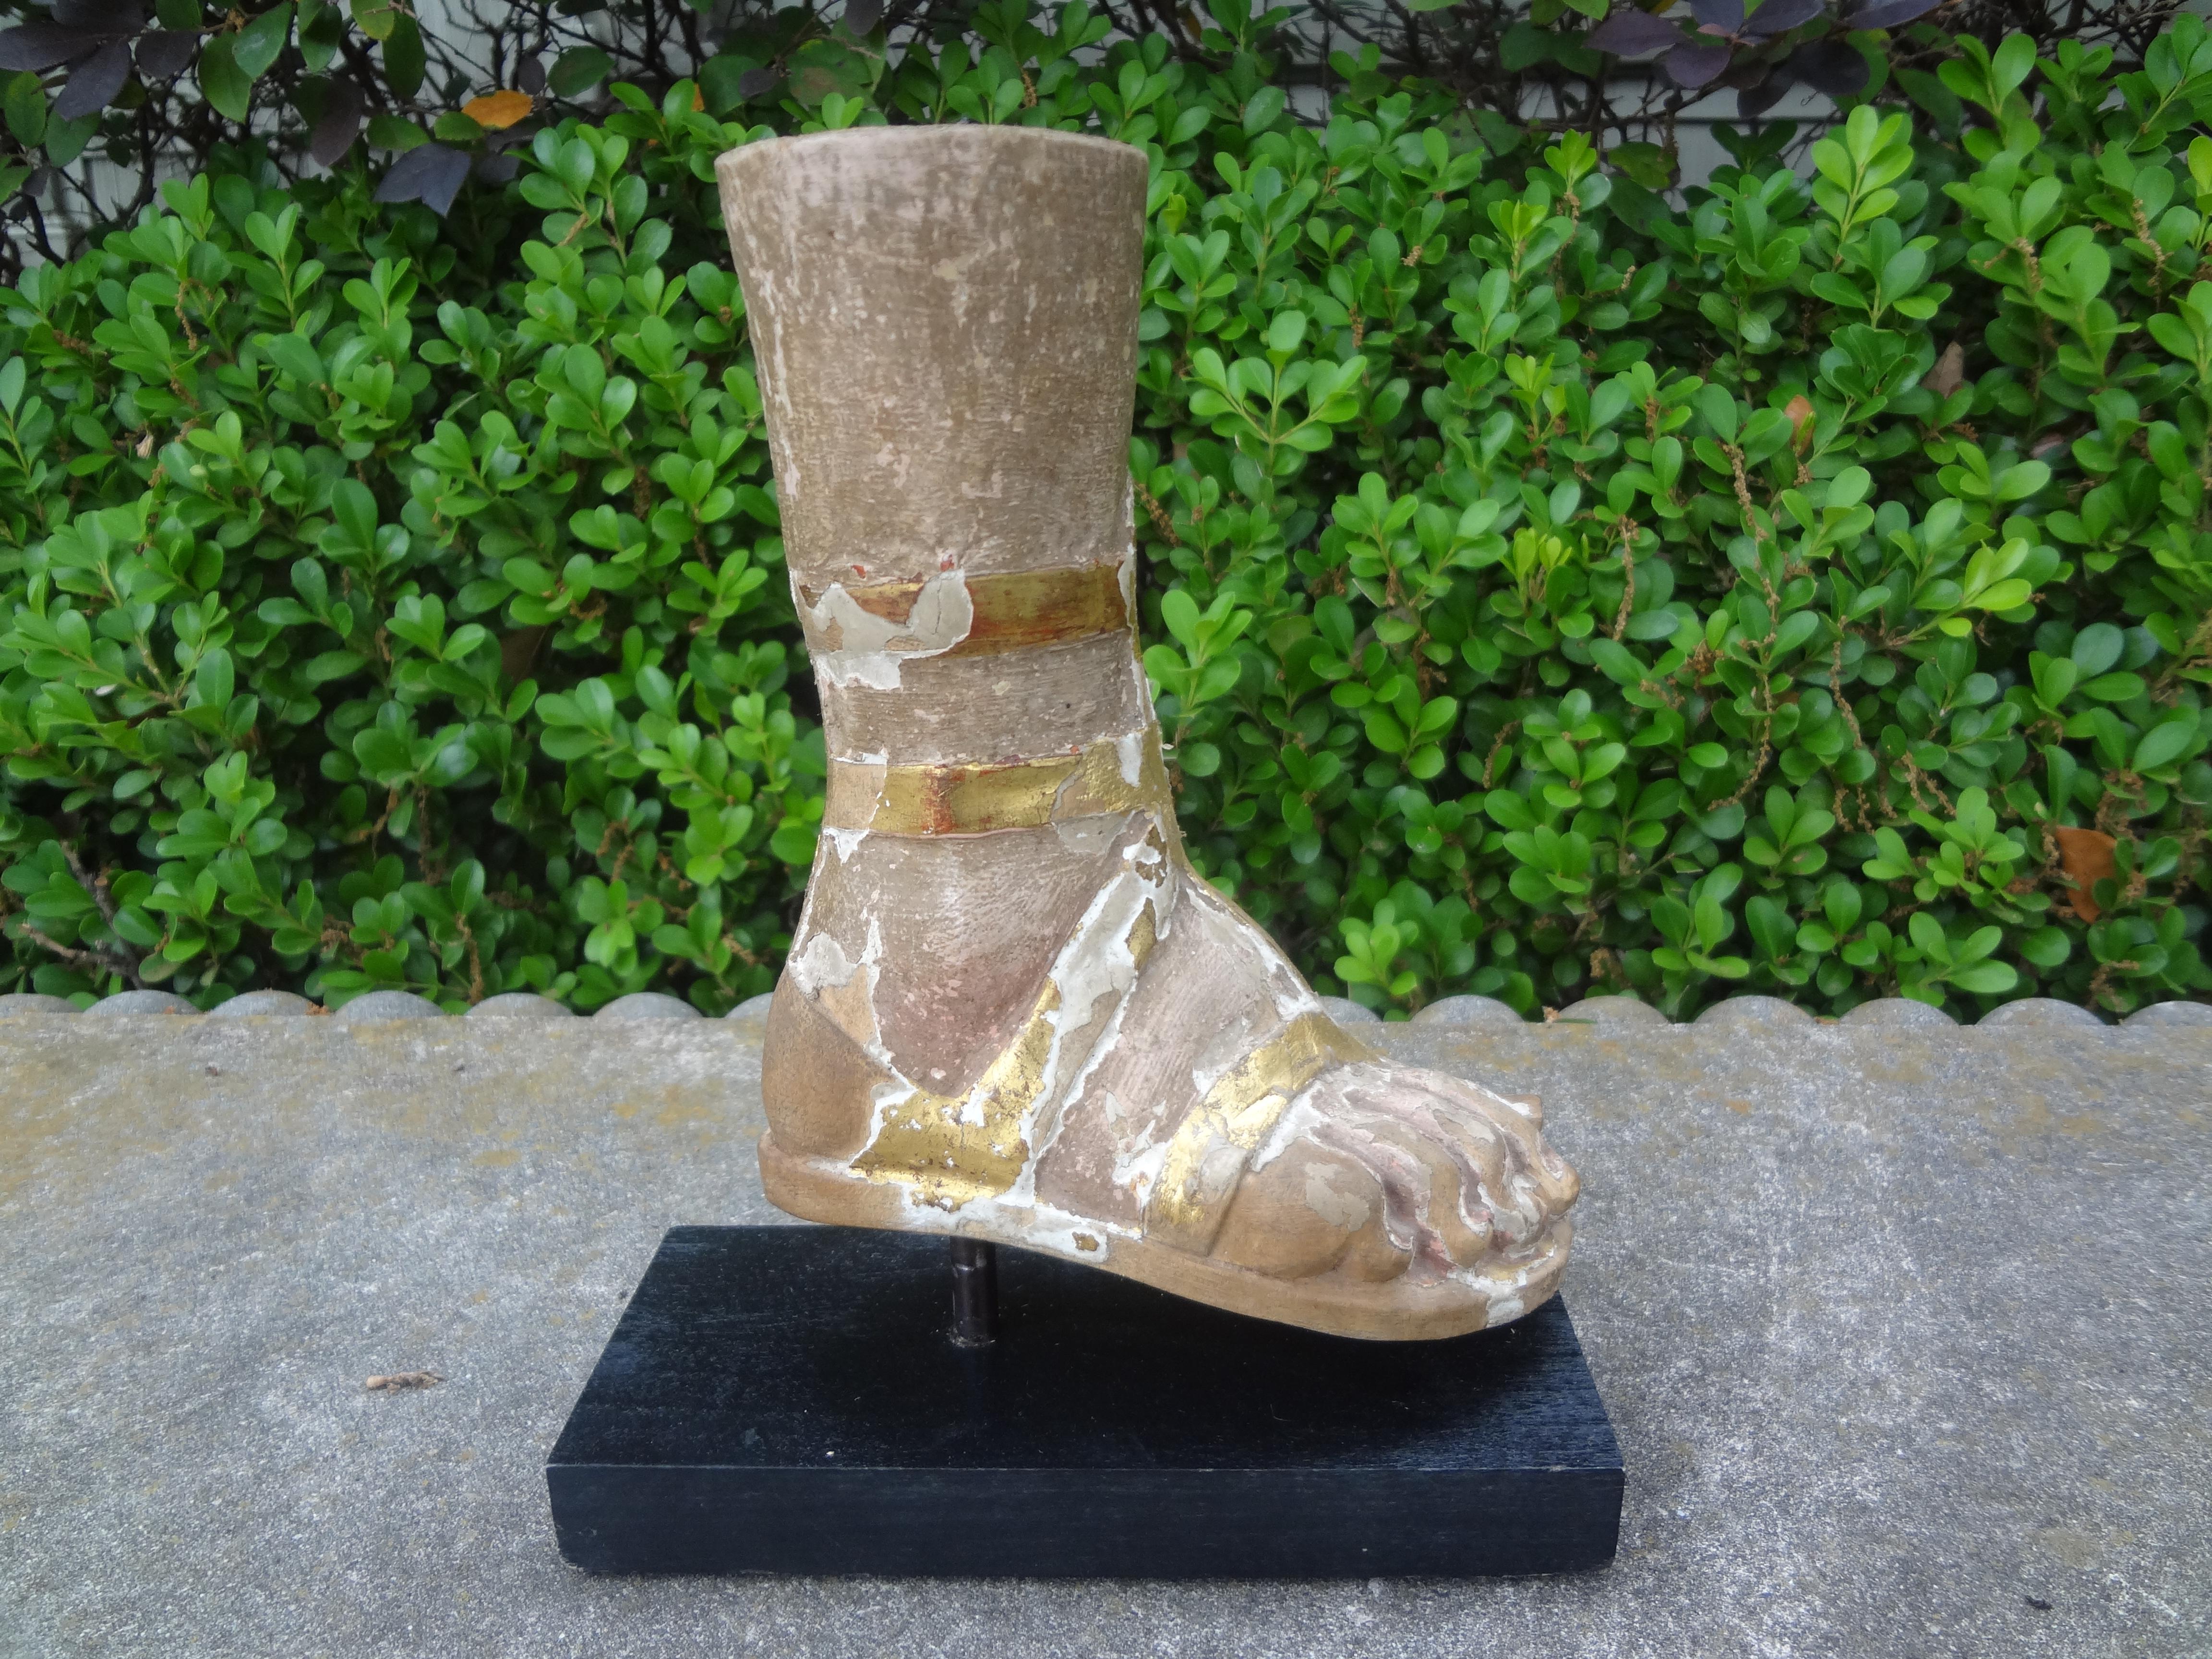 Pied de santon en bois sculpté italien du 19e siècle.
Ce superbe pied de Santo en bois italien sculpté représentant un archange habillé en romain est une véritable œuvre d'art.
soldat. Cette sculpture magnifiquement sculptée et dorée est montée sur